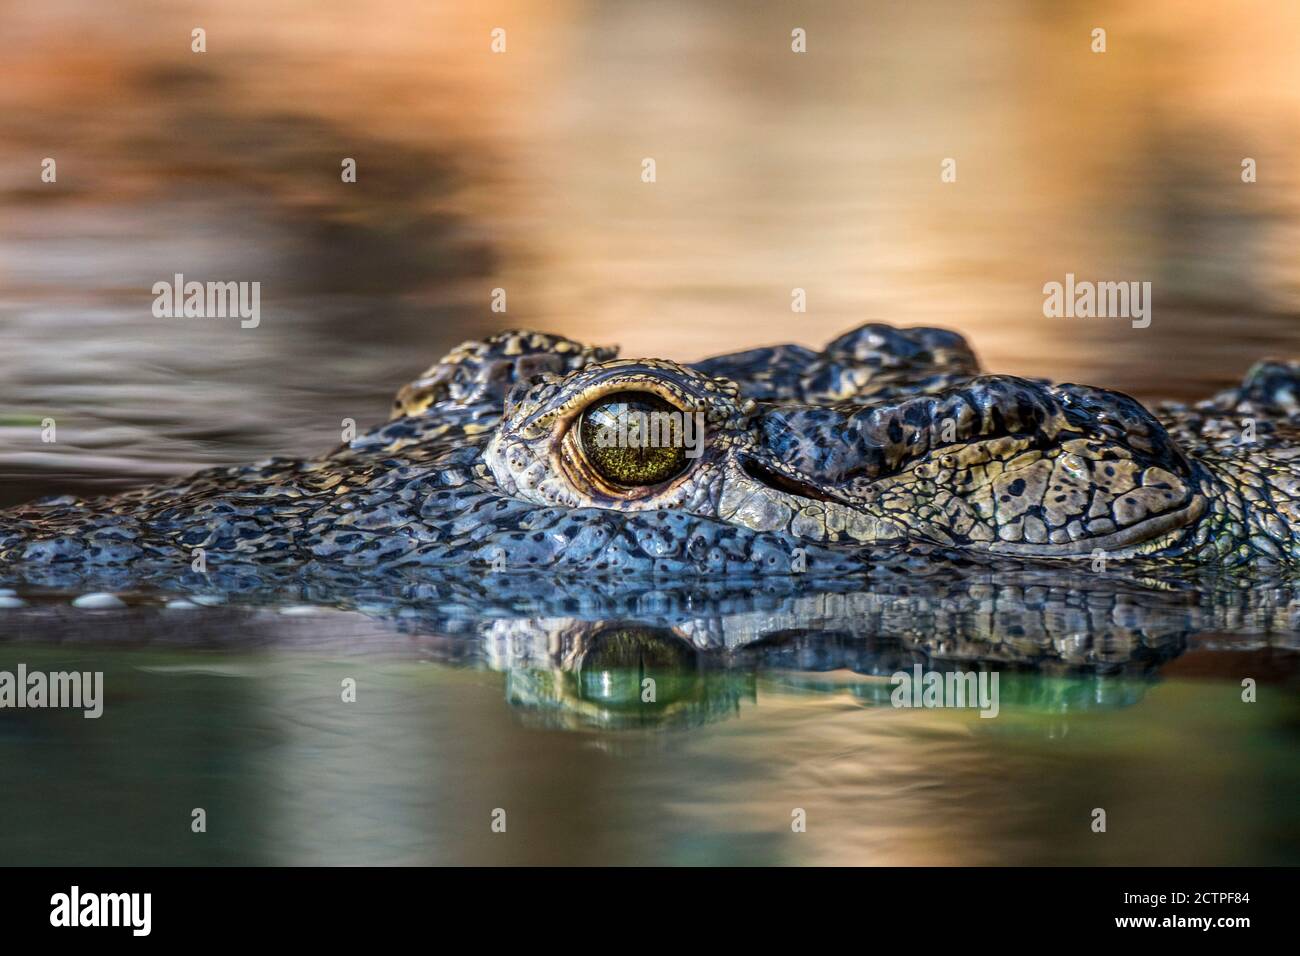 Crocodile du Nil (Crocodylus niloticus), gros plan de la tête montrant l'œil avec pupille à fente verticale tout en flottant dans l'eau du lac, originaire d'Afrique Banque D'Images